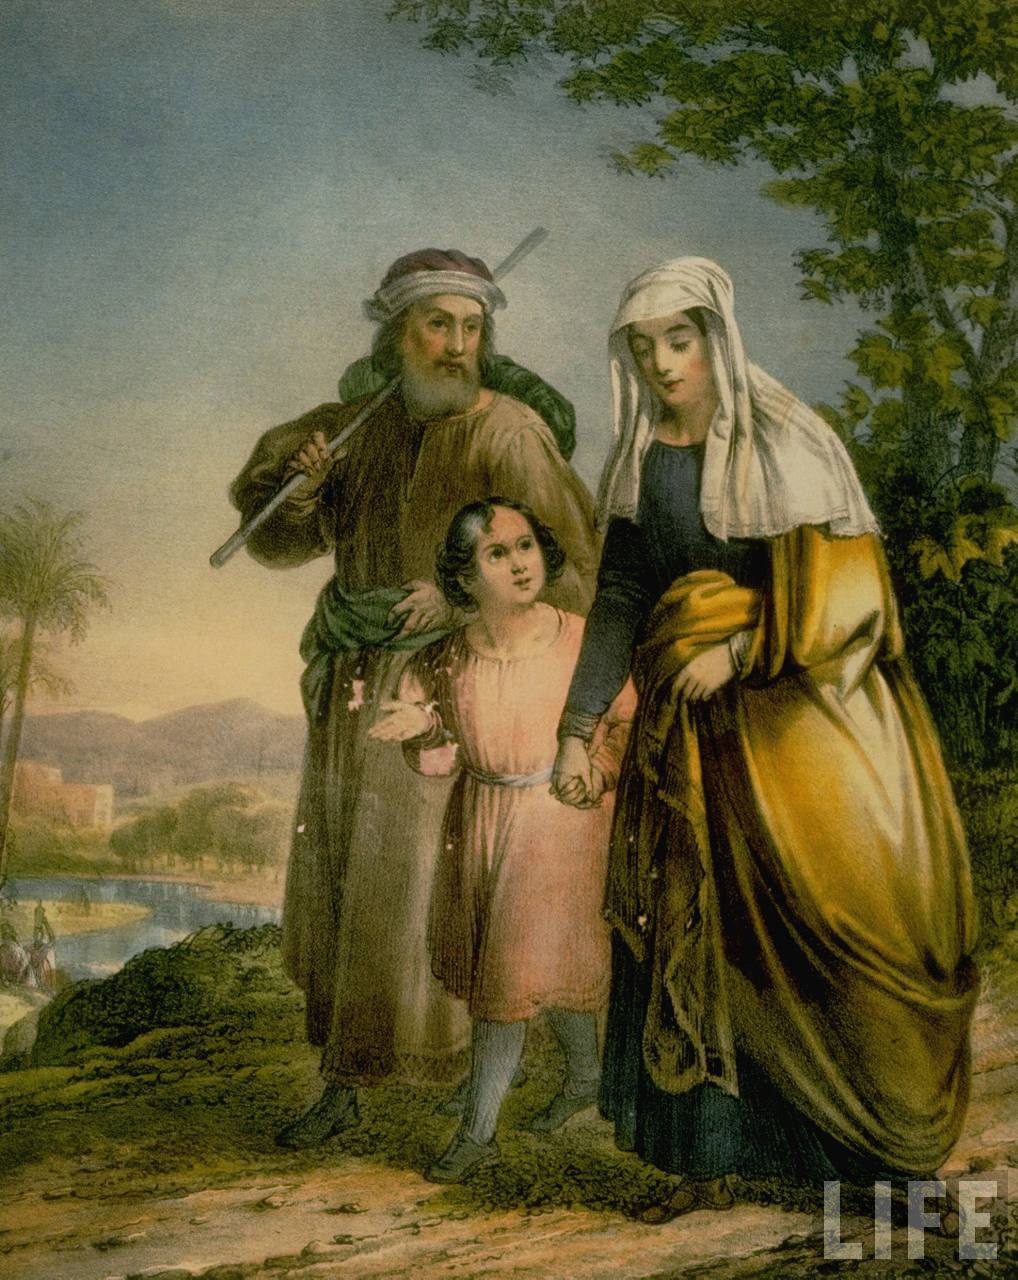 43+] Jesus and Mary Wallpaper - WallpaperSafari